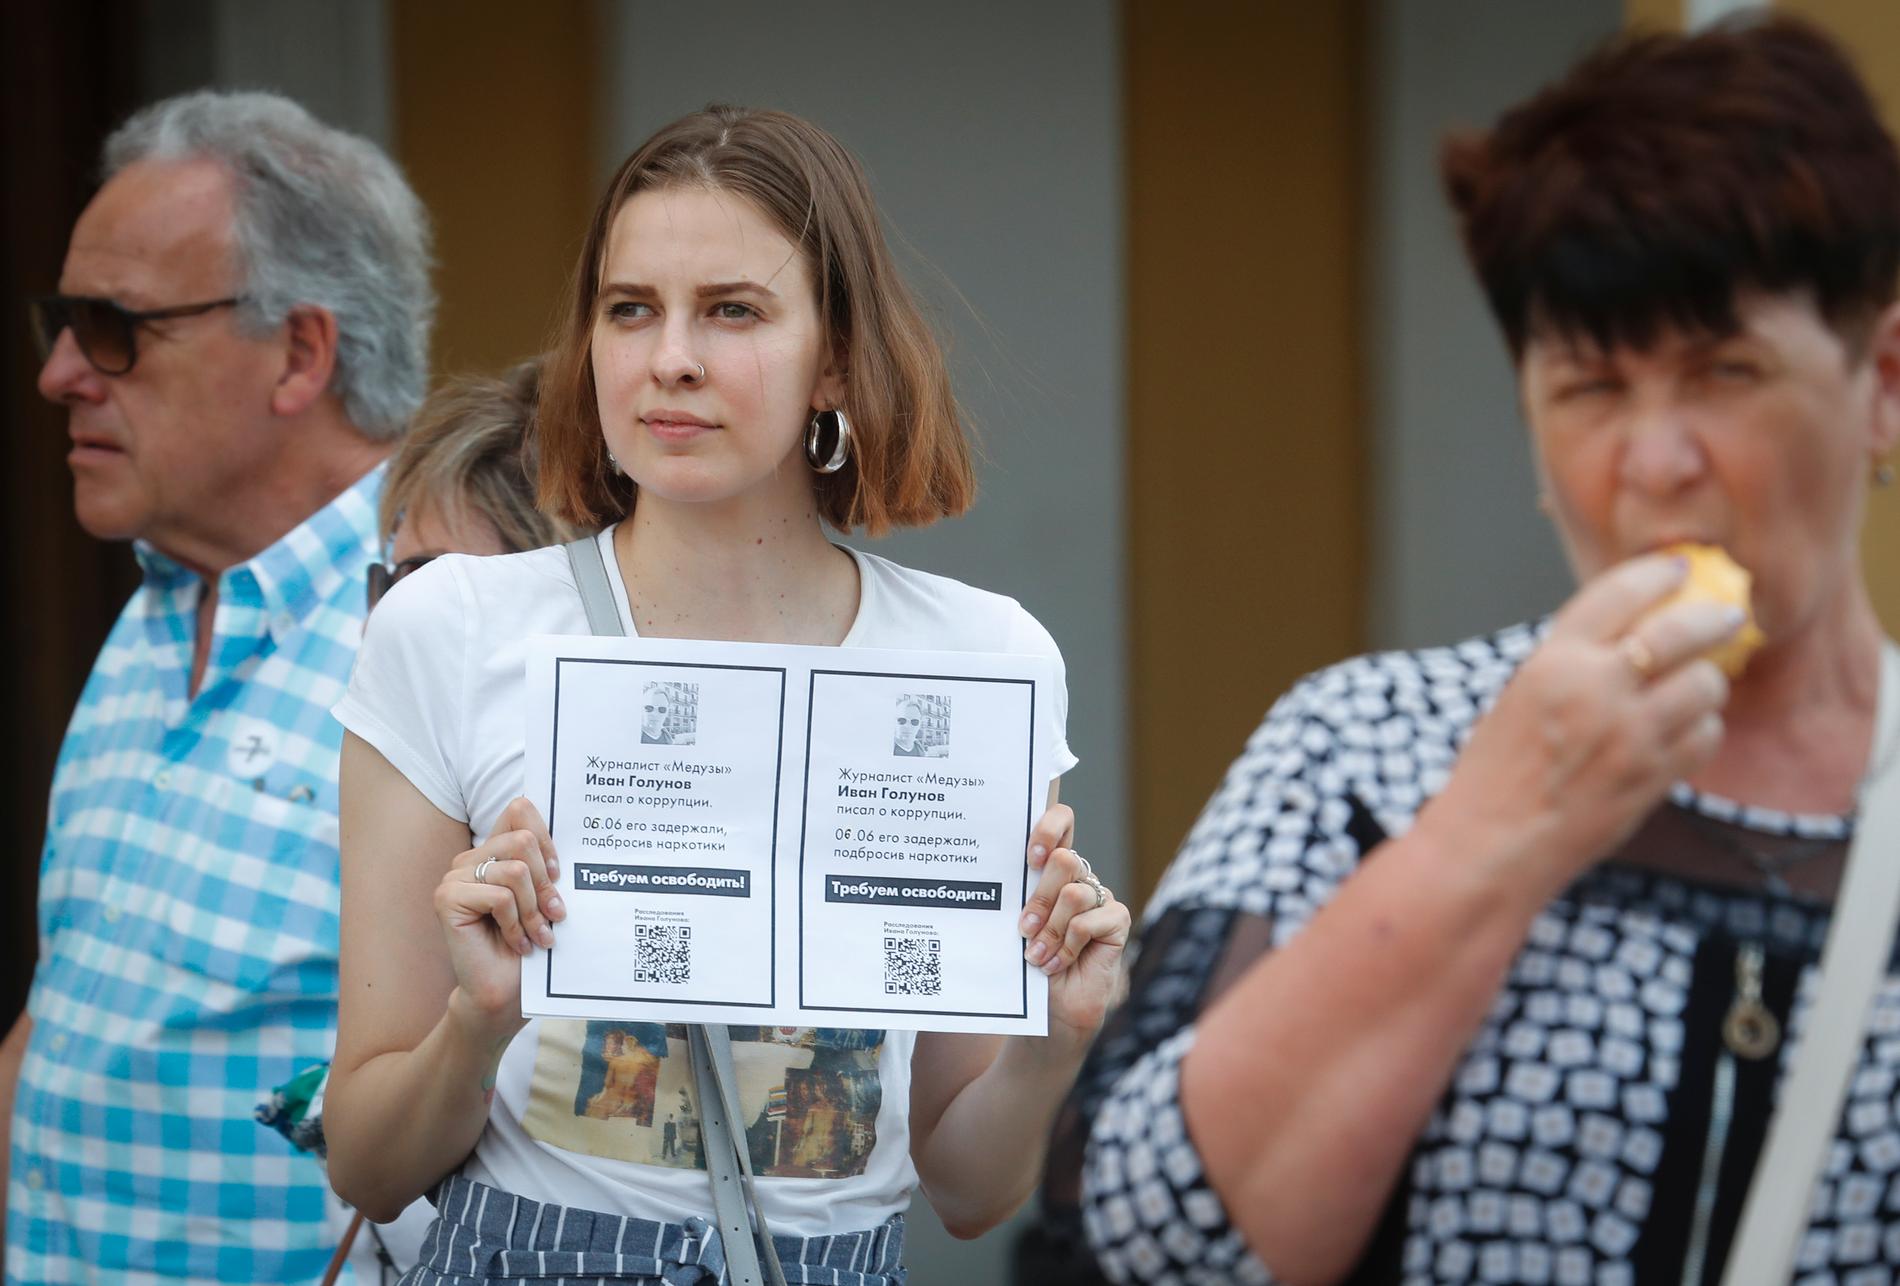 En kollega till den ryske journalisten Ivan Golunov kräver att han släpps vid en stödaktion i S:t Petersburg på lördagen.